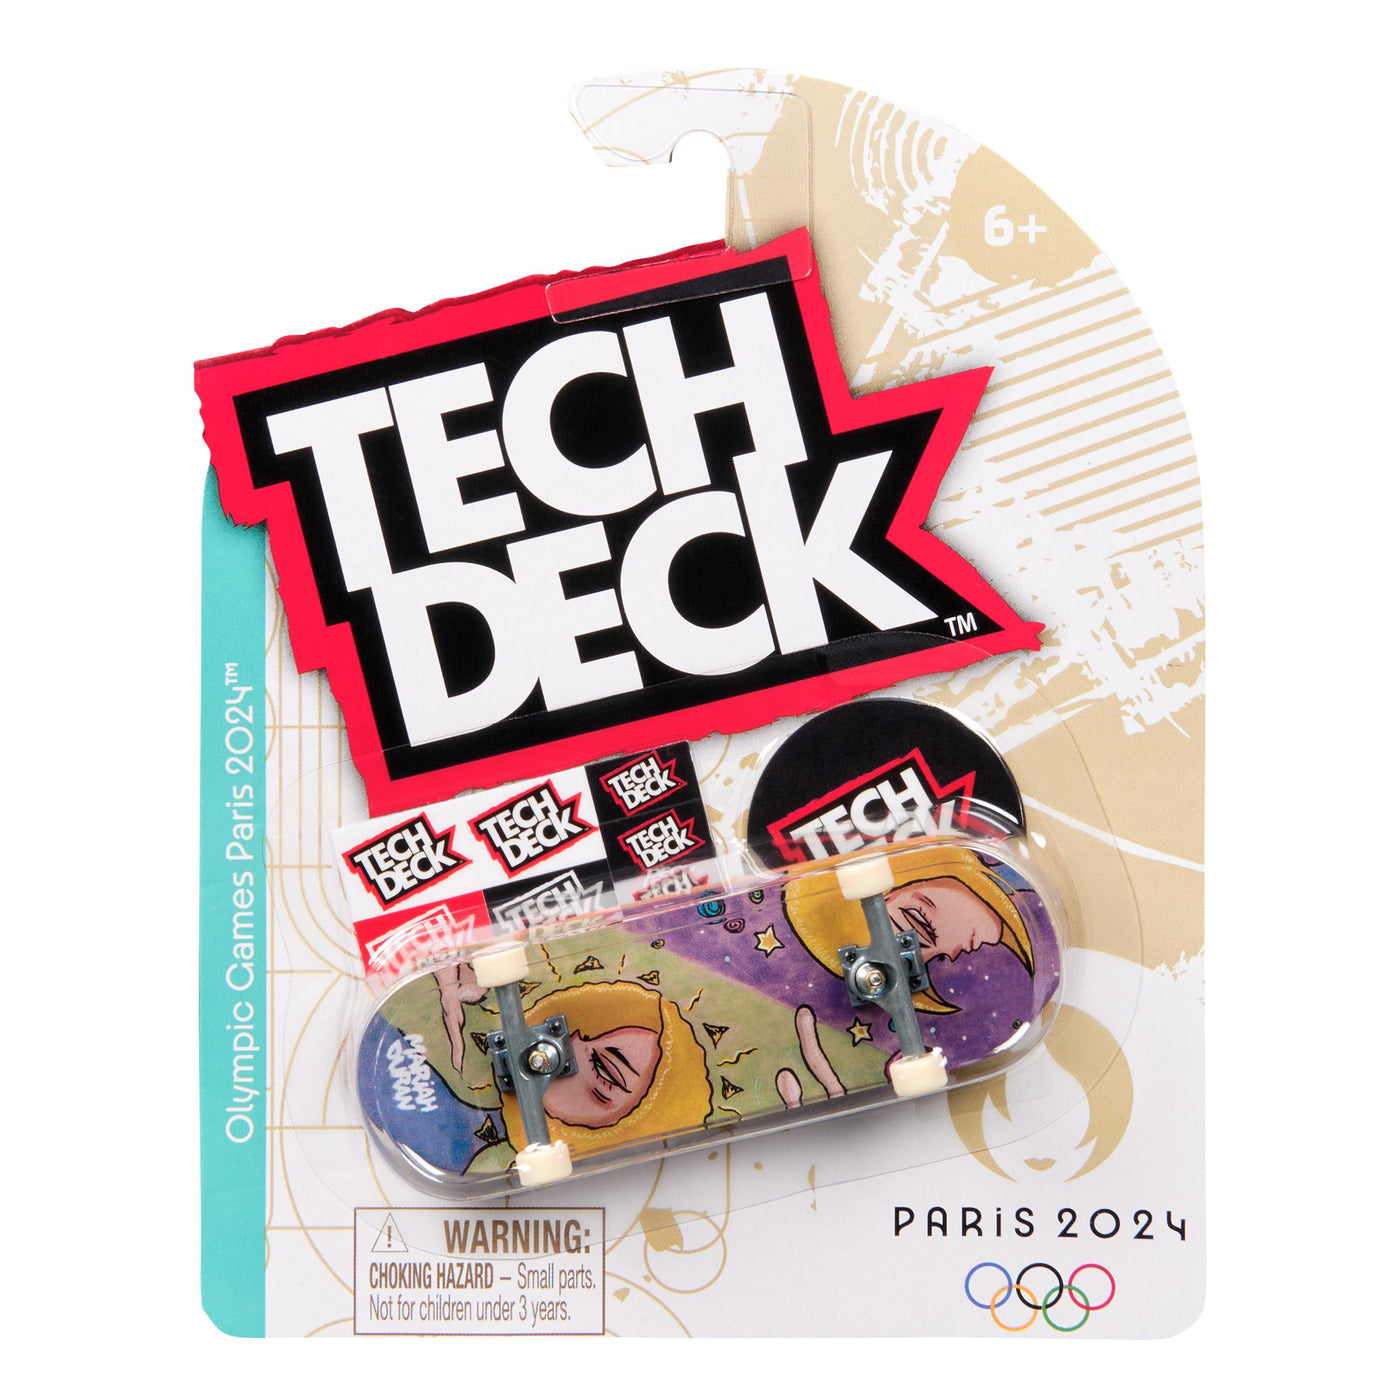 Tech Deck 96mm Fingerboard Olympic Single Pack - Random